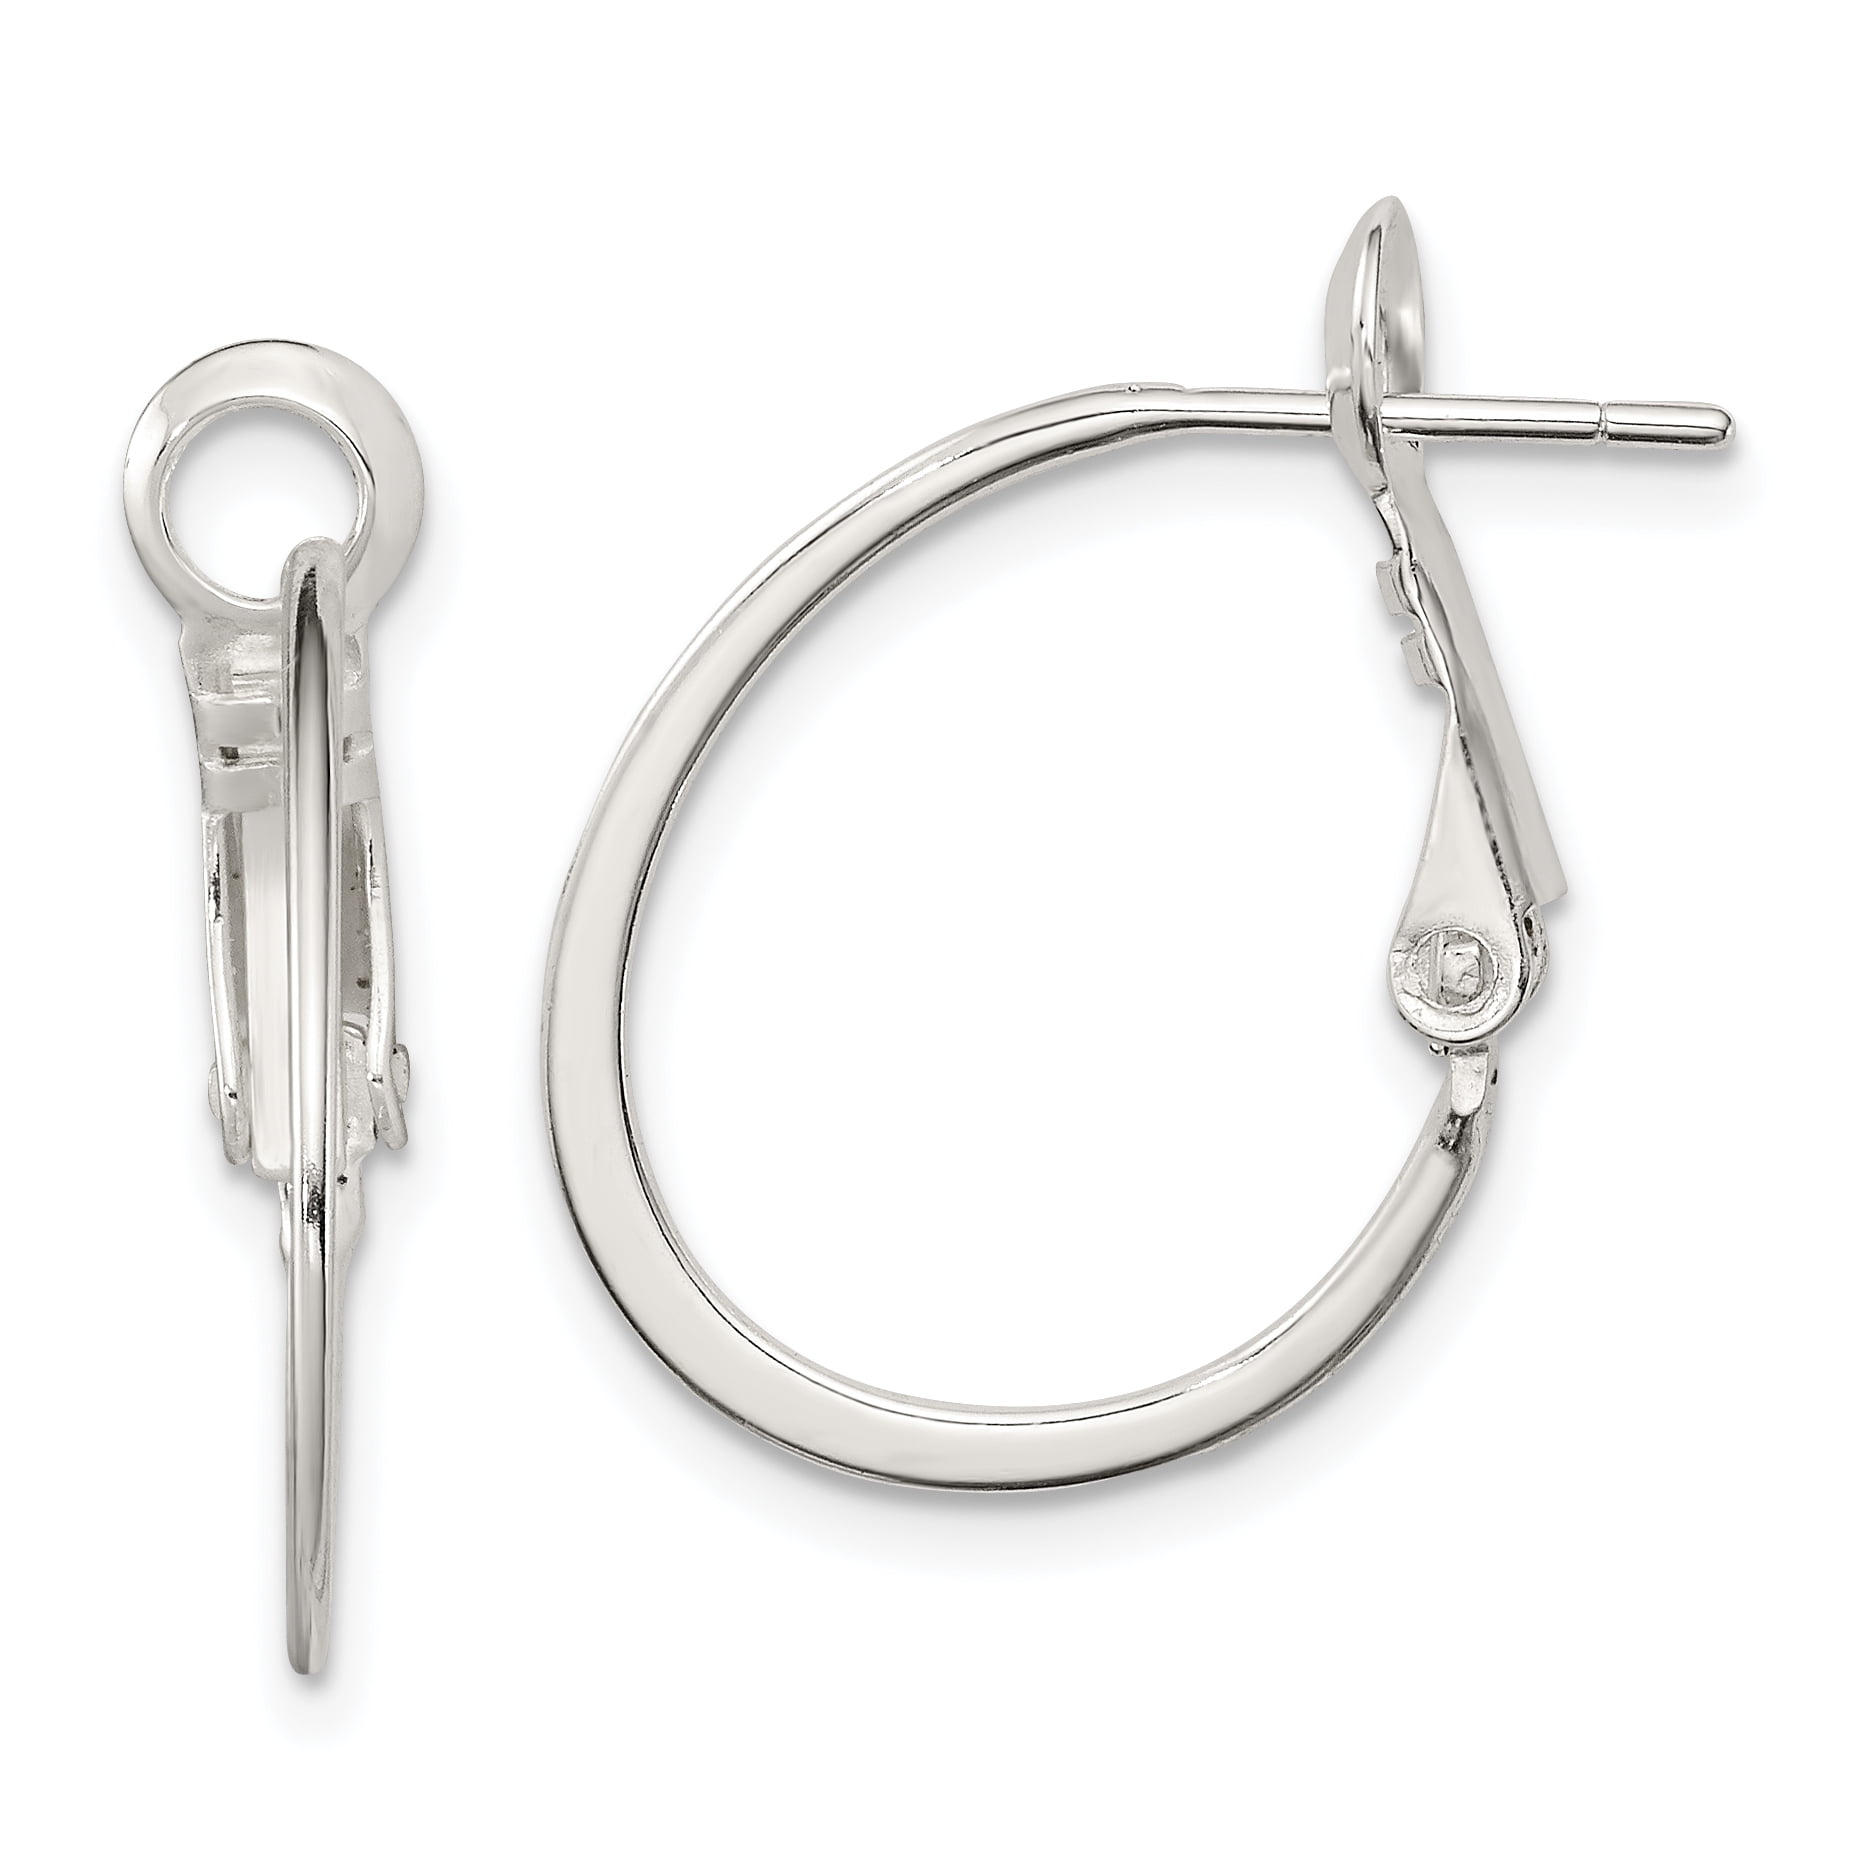 925 Sterling Silver Oval Hoop Earrings Ear Hoops Set Fine Jewelry For Women Gifts For Her